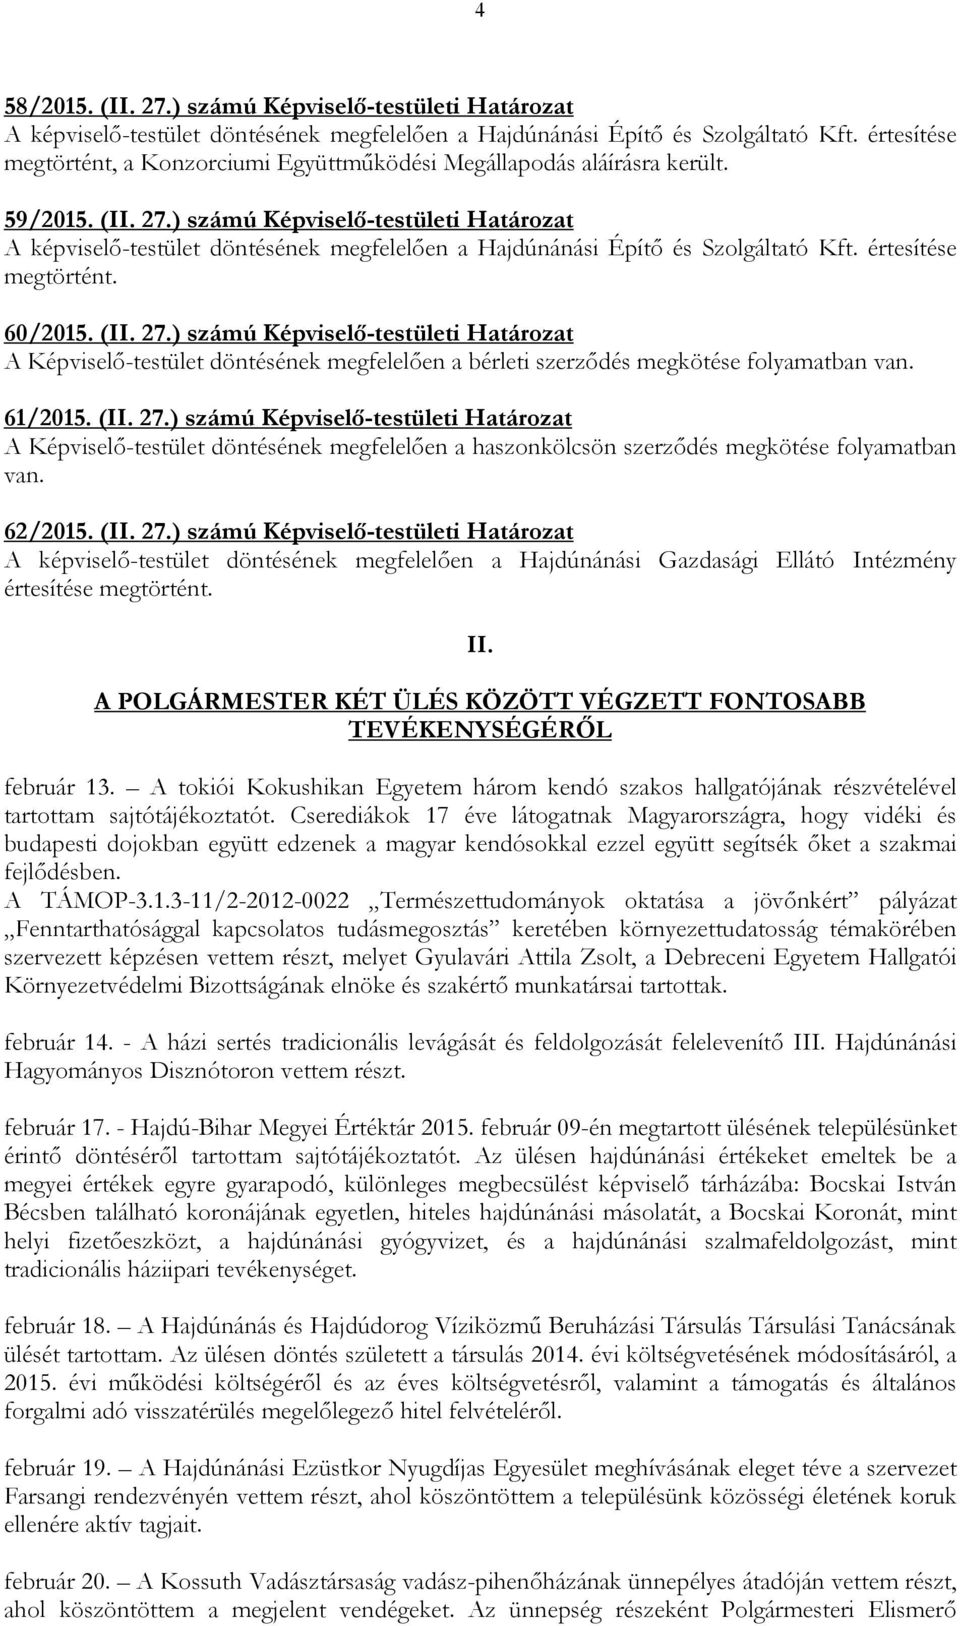 ) számú Képviselı-testületi Határozat A képviselı-testület döntésének megfelelıen a Hajdúnánási Építı és Szolgáltató Kft. értesítése megtörtént. 60/2015. (II. 27.